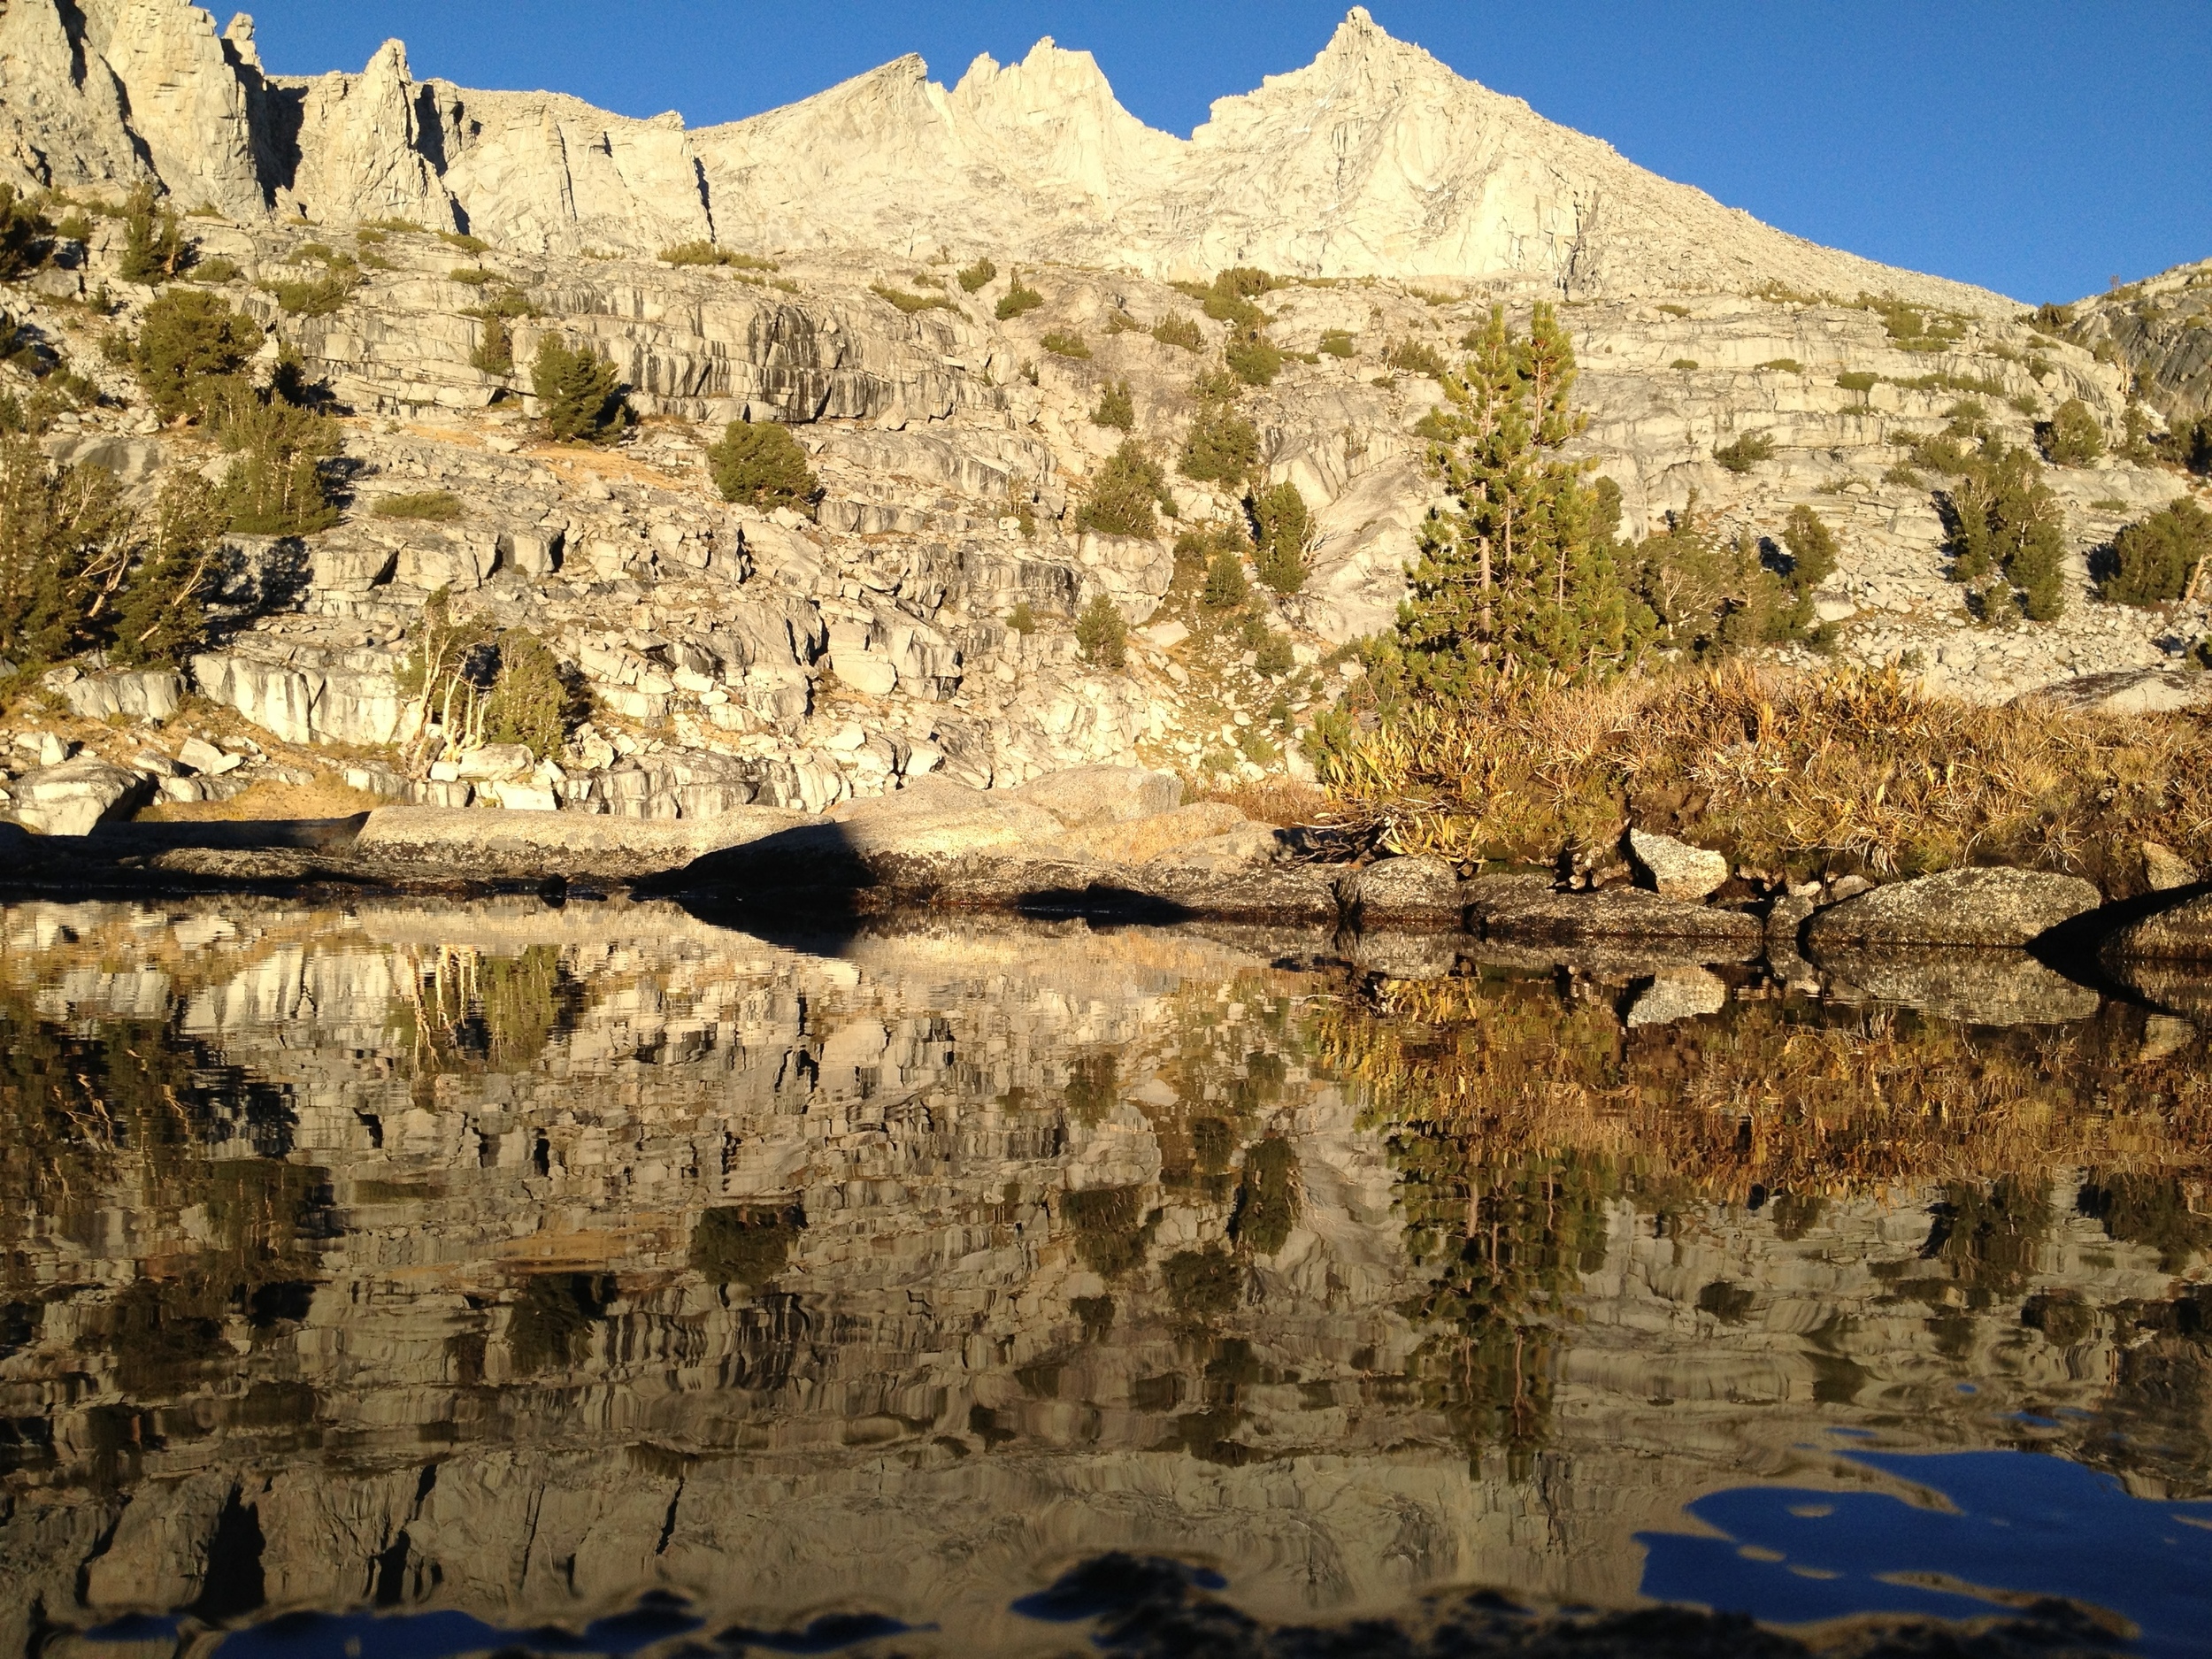 The scattered white rocks of the Sierra - High Sierra Topix